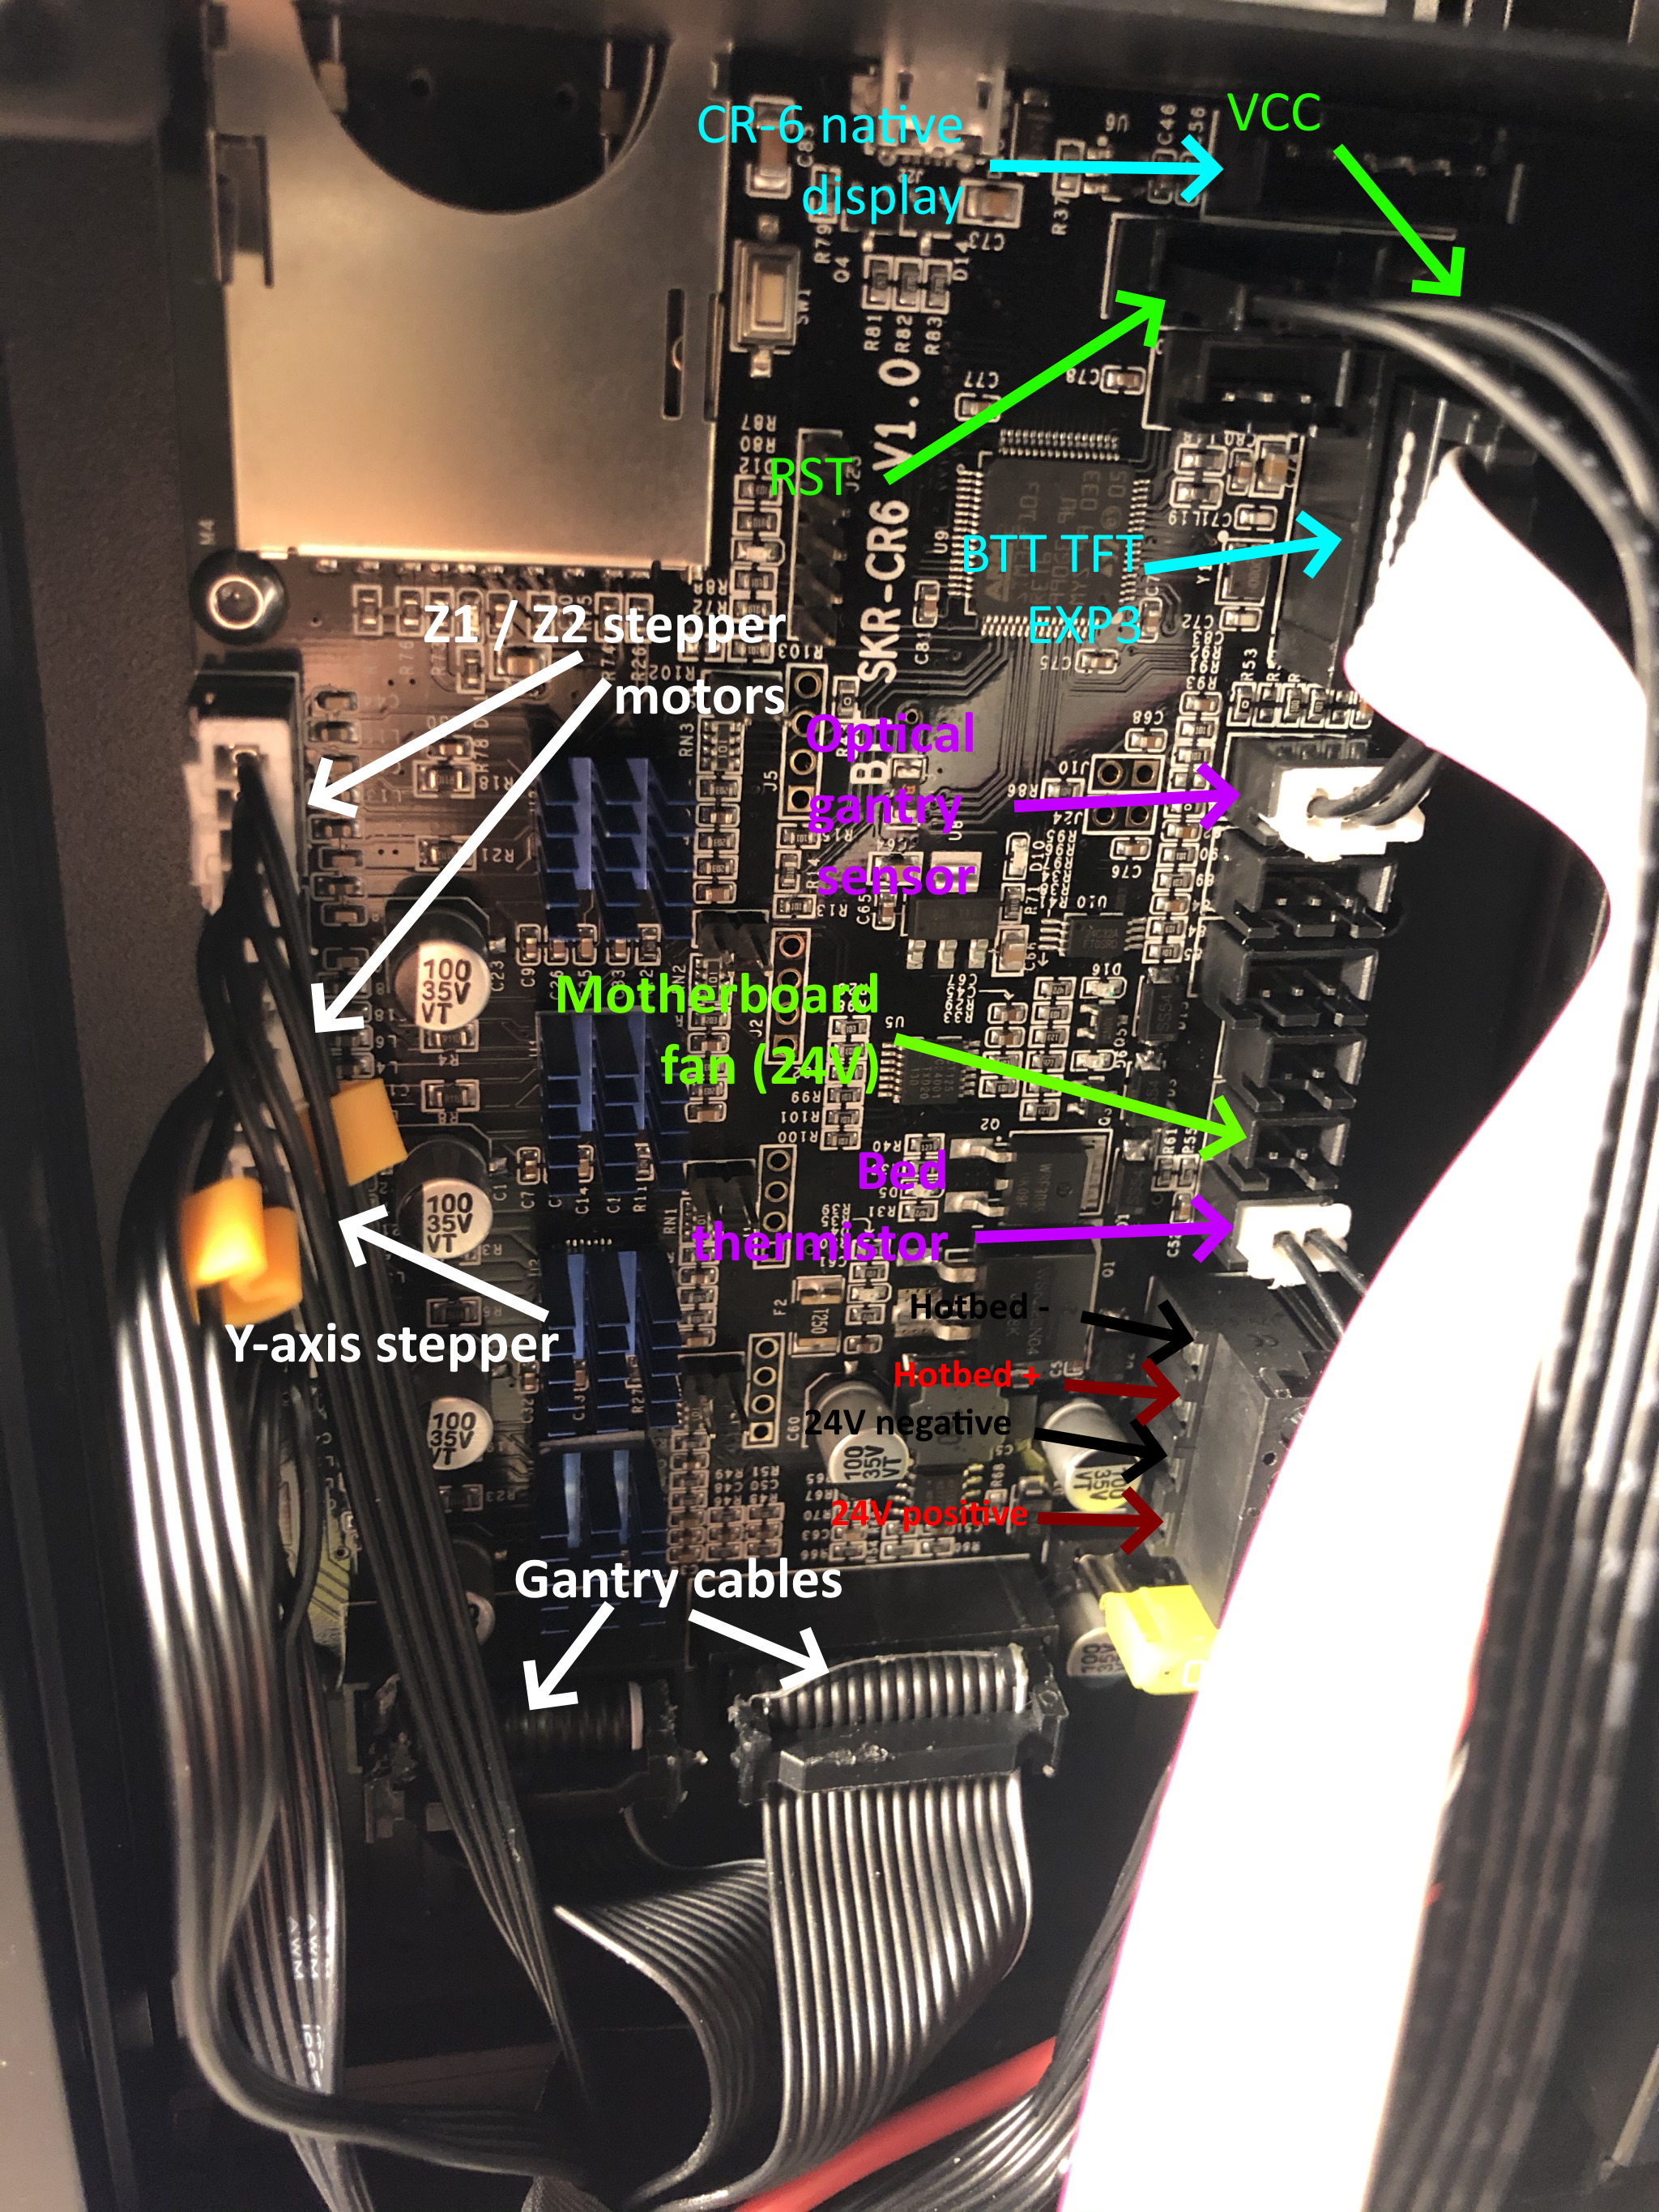 BTT SKR CR6 motherboard wiring